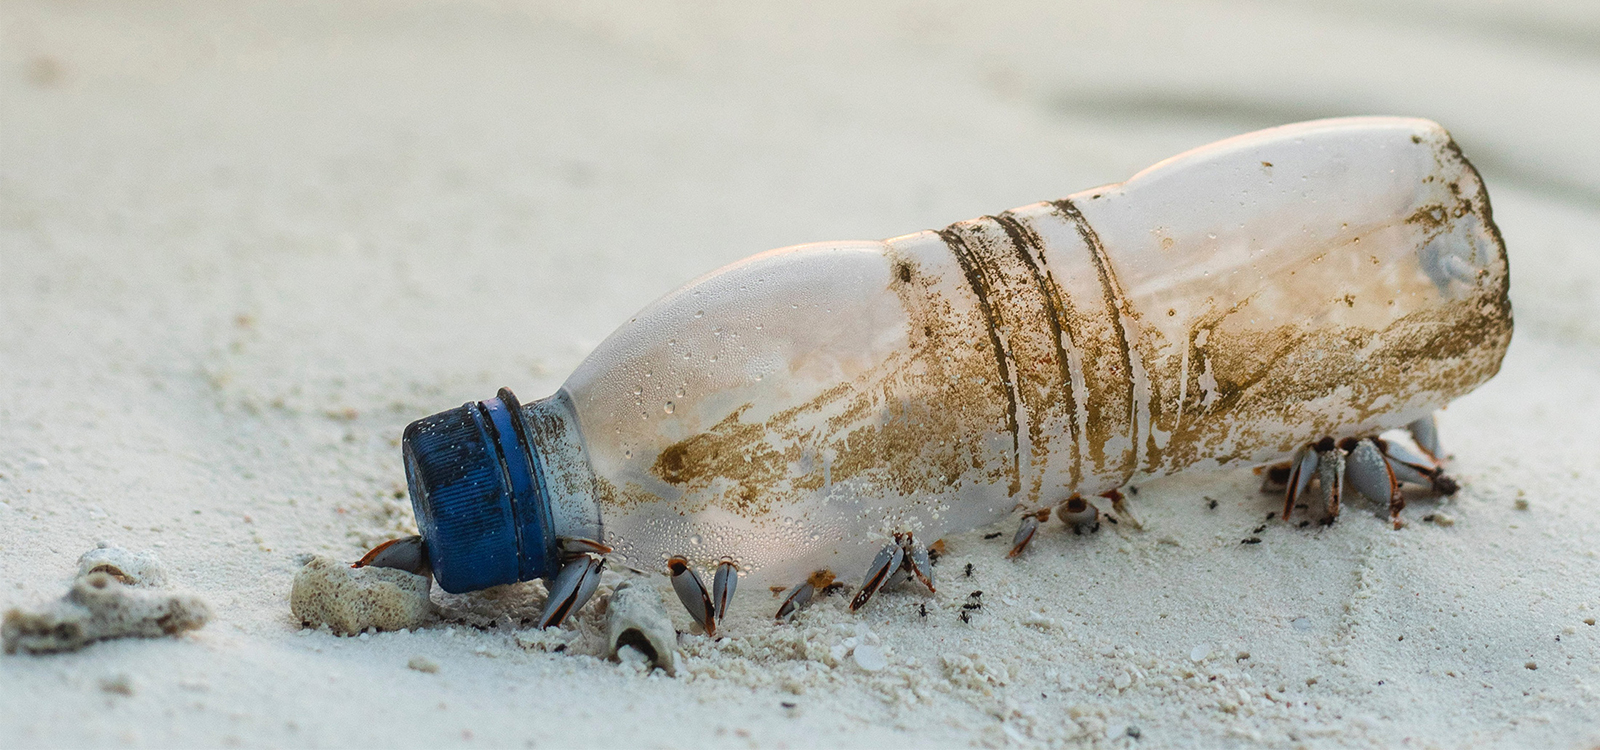 Schmutzige Plastikflasche mit Muscheln am Sandstrand